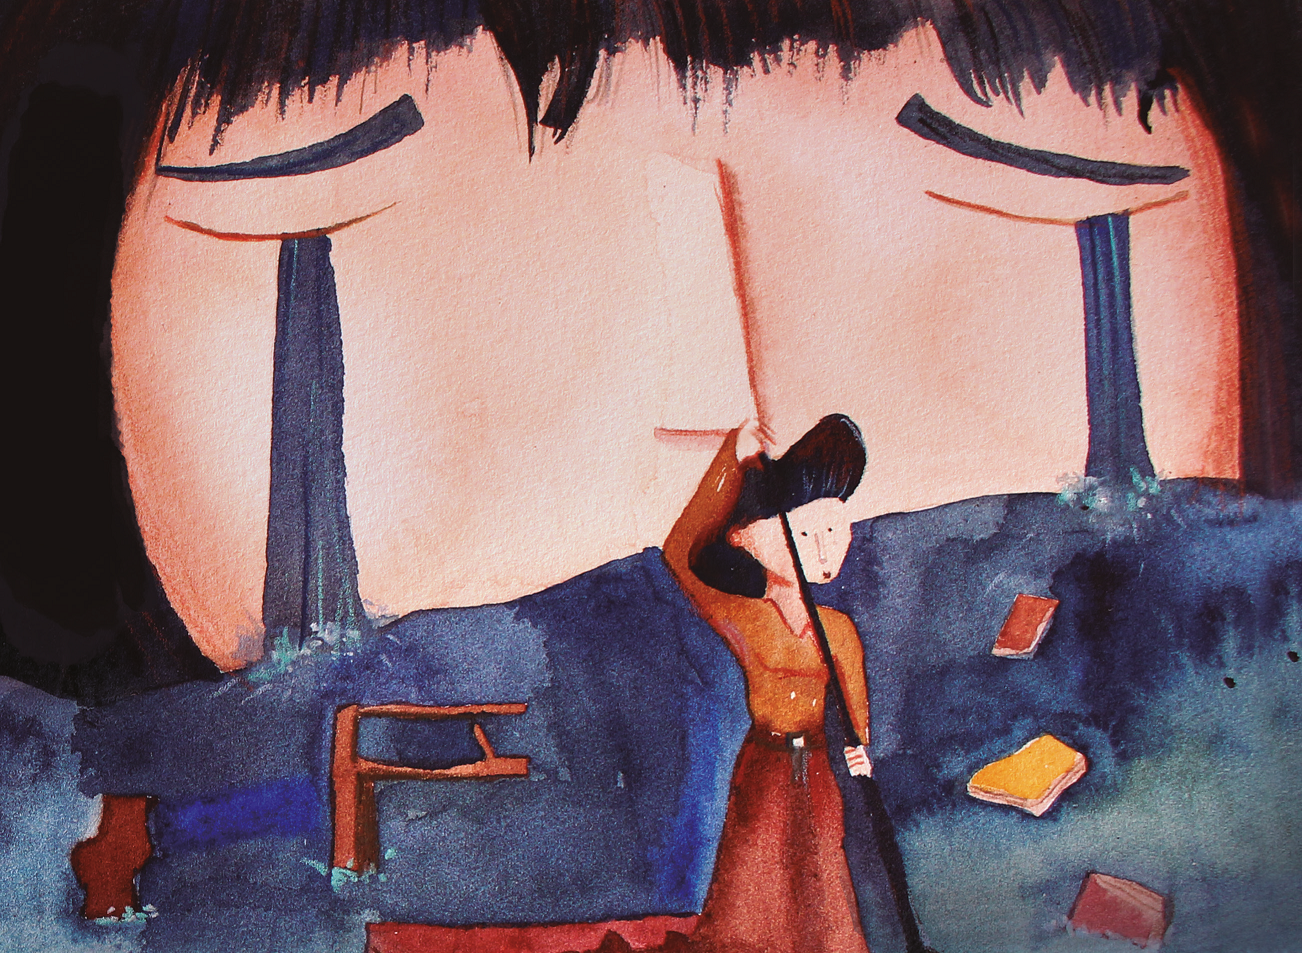 Menina chorando, formando rio, e mulher remando em cima de uma mala. Ela nasceu Clarice, página 10. Imagem ilustrativa texto paradoxo da ficção.